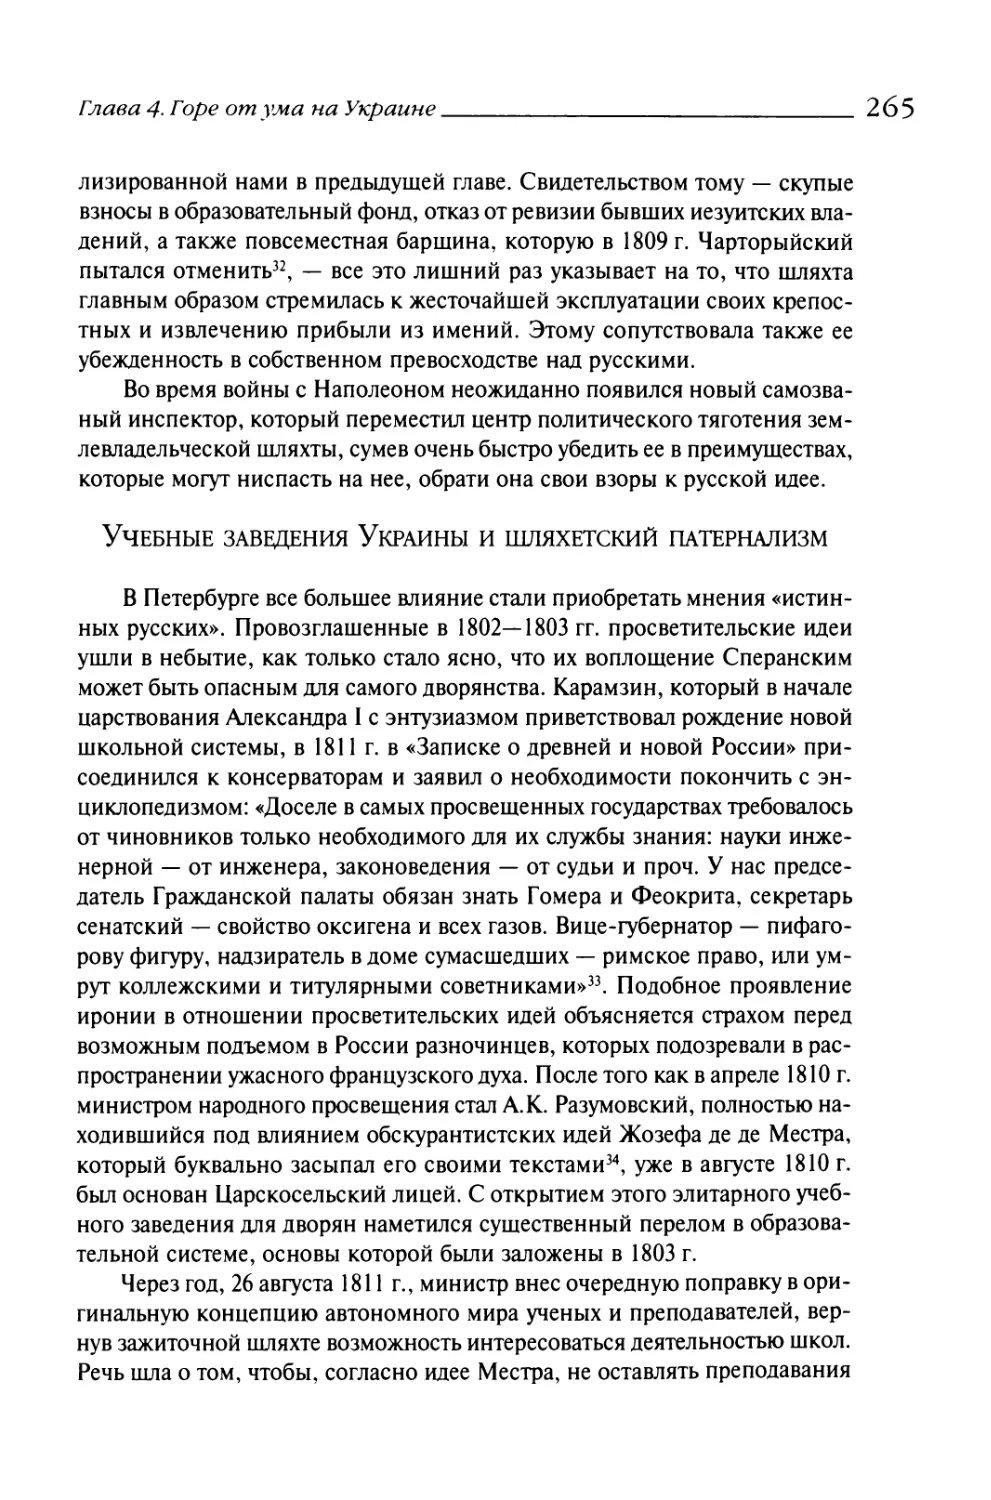 Учебные заведения Украины и шляхетский патернализм